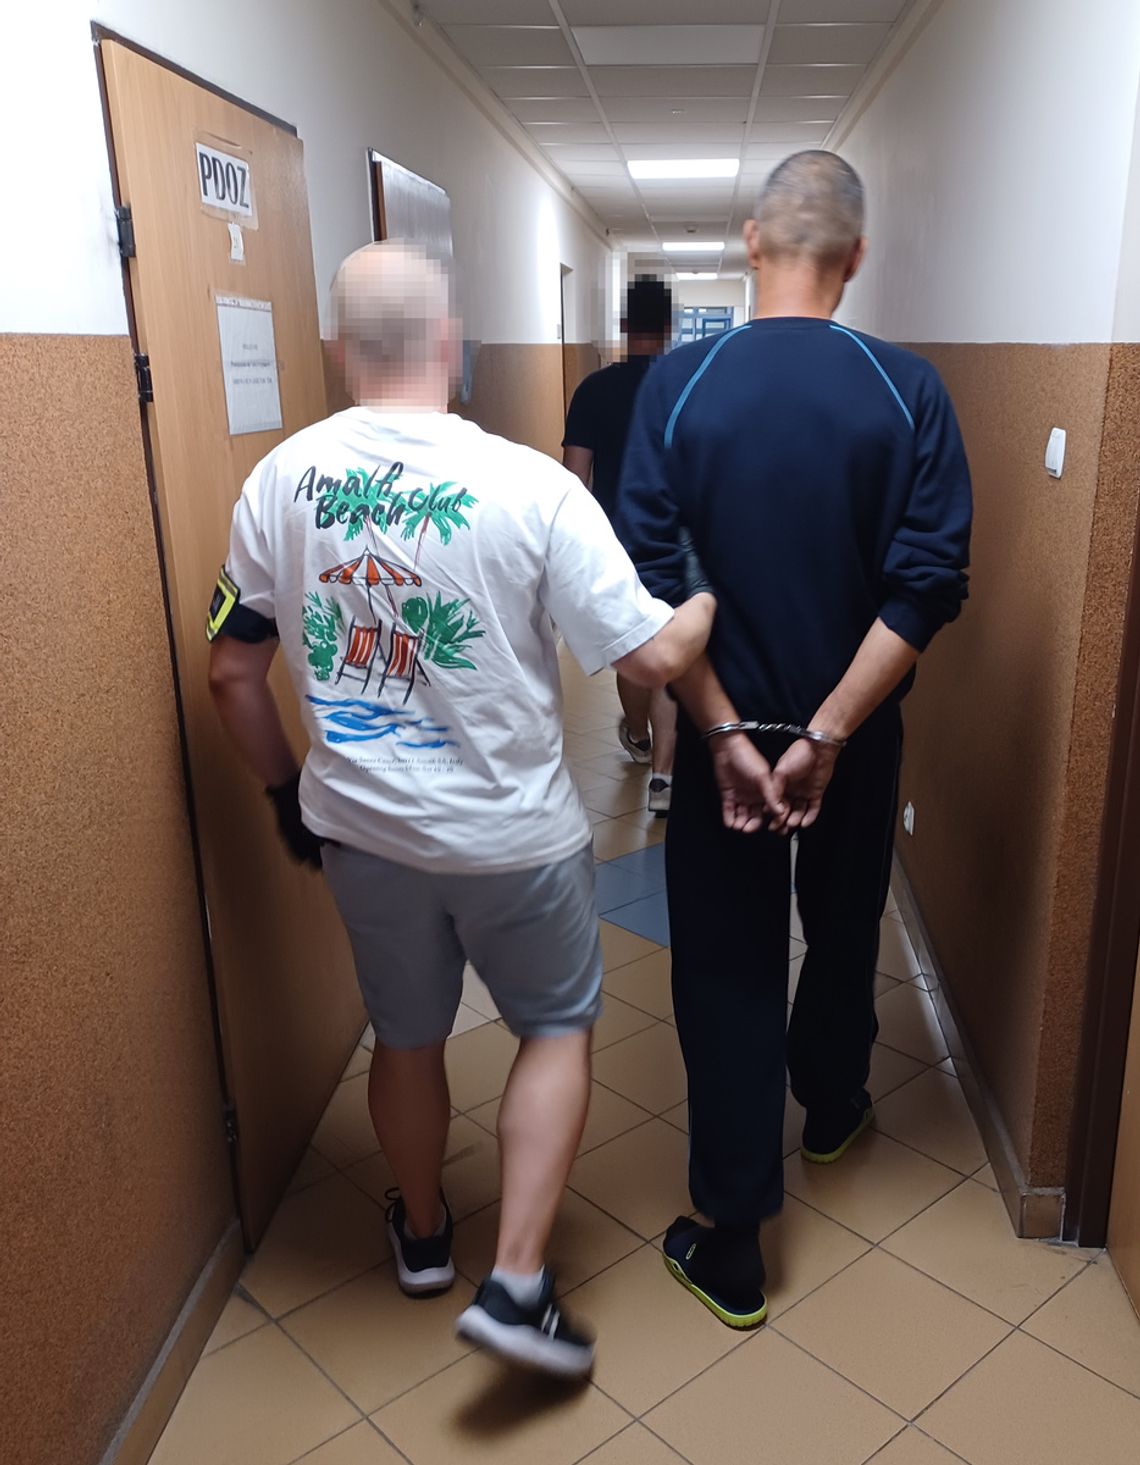 Mołdawianin zaatakował nożem, odpowie za usiłowanie zabójstwa. Jego dziewczyna pomogła zatrzeć ślady